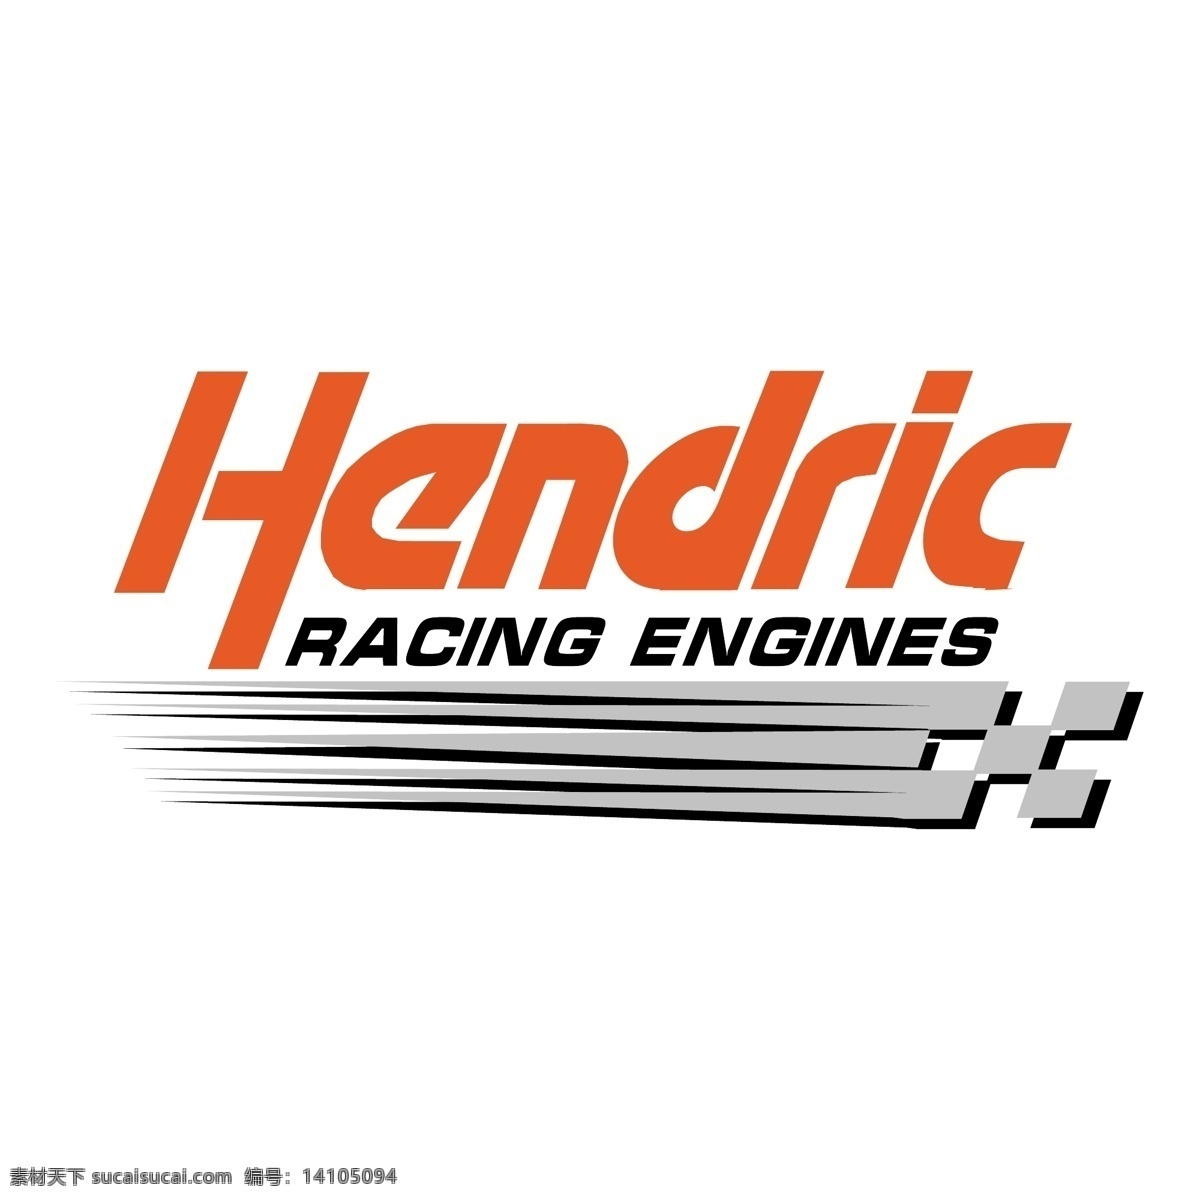 亨德里克 赛车 引擎 标识 公司 免费 品牌 品牌标识 商标 矢量标志下载 免费矢量标识 矢量 psd源文件 logo设计